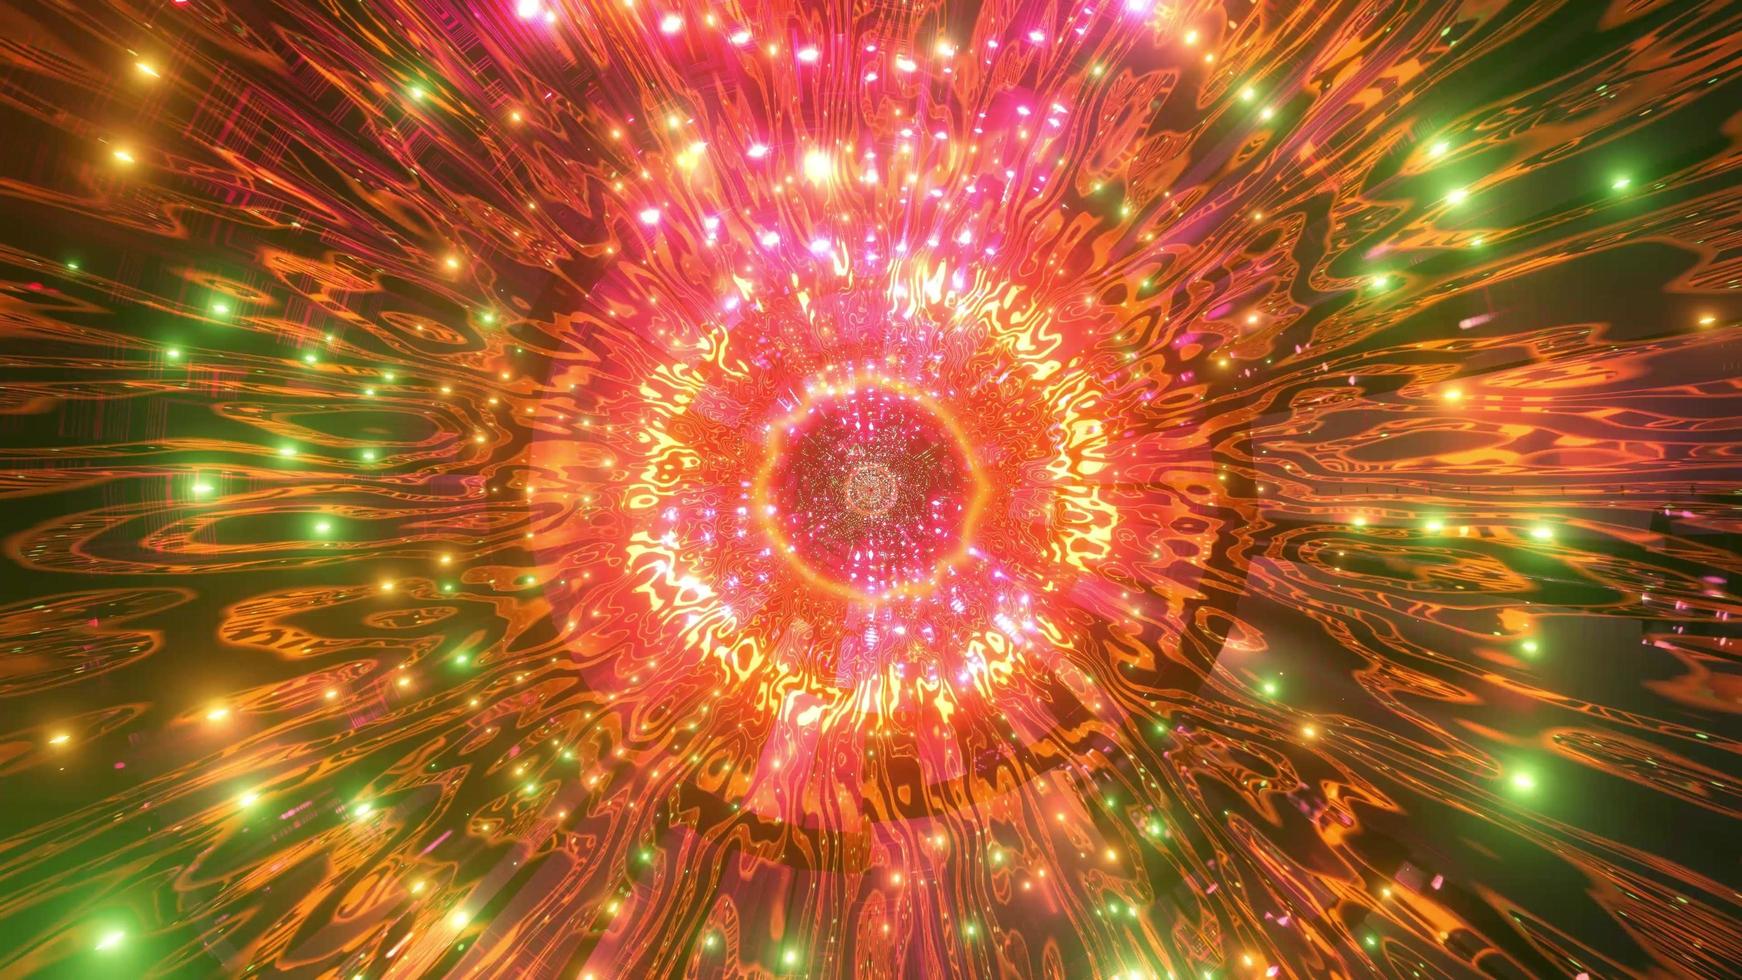 Luces y formas naranjas, verdes, rojas y blancas en la ilustración 3d del caleidoscopio para fondo o papel tapiz foto